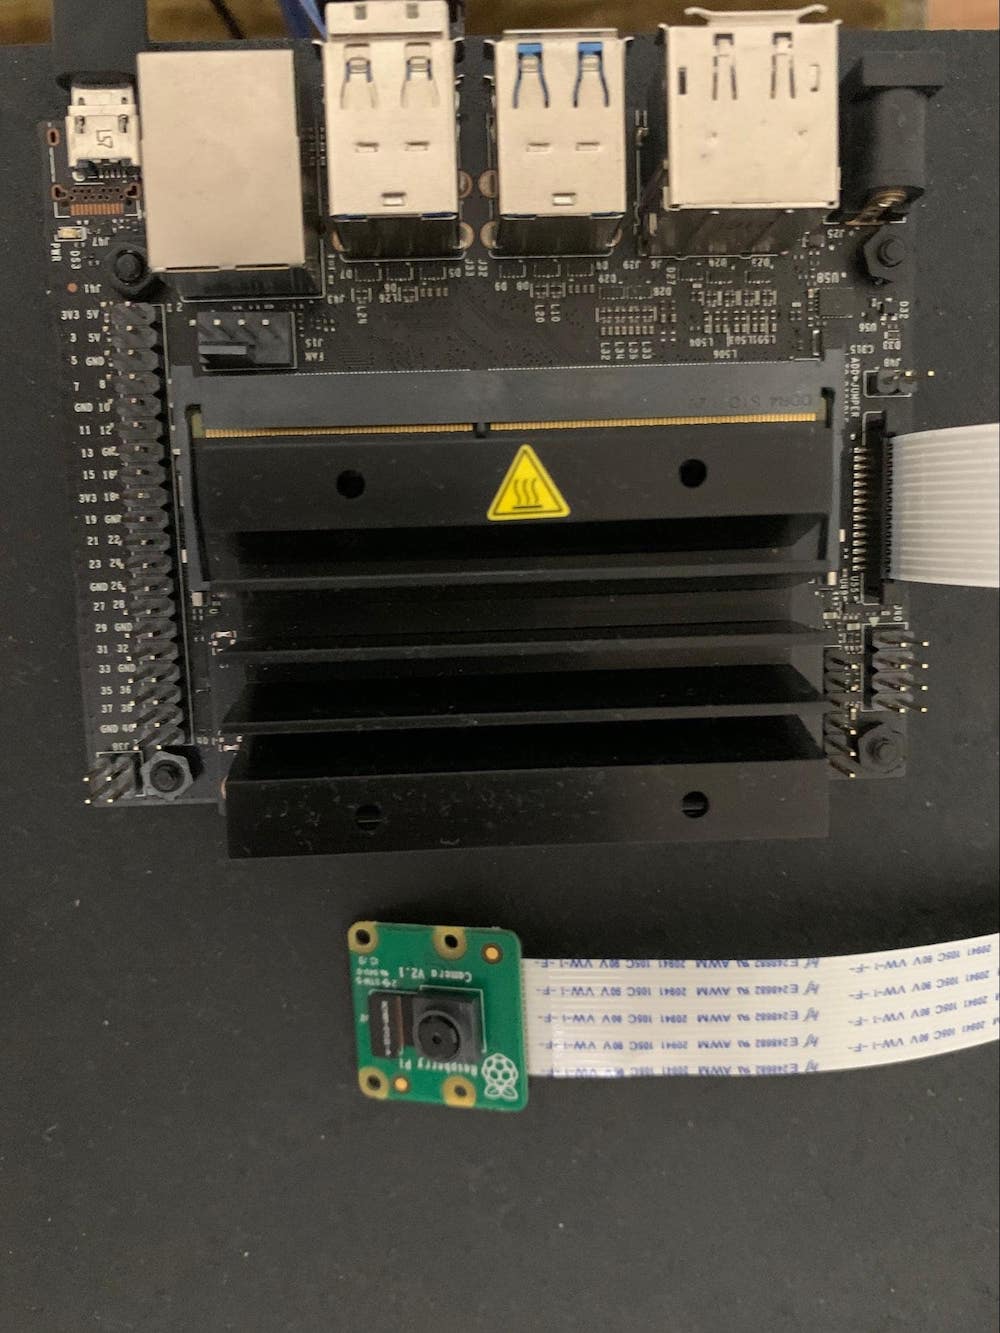 Raspberry Pi Camera Module v2 with Jetson Nano Developer Kit